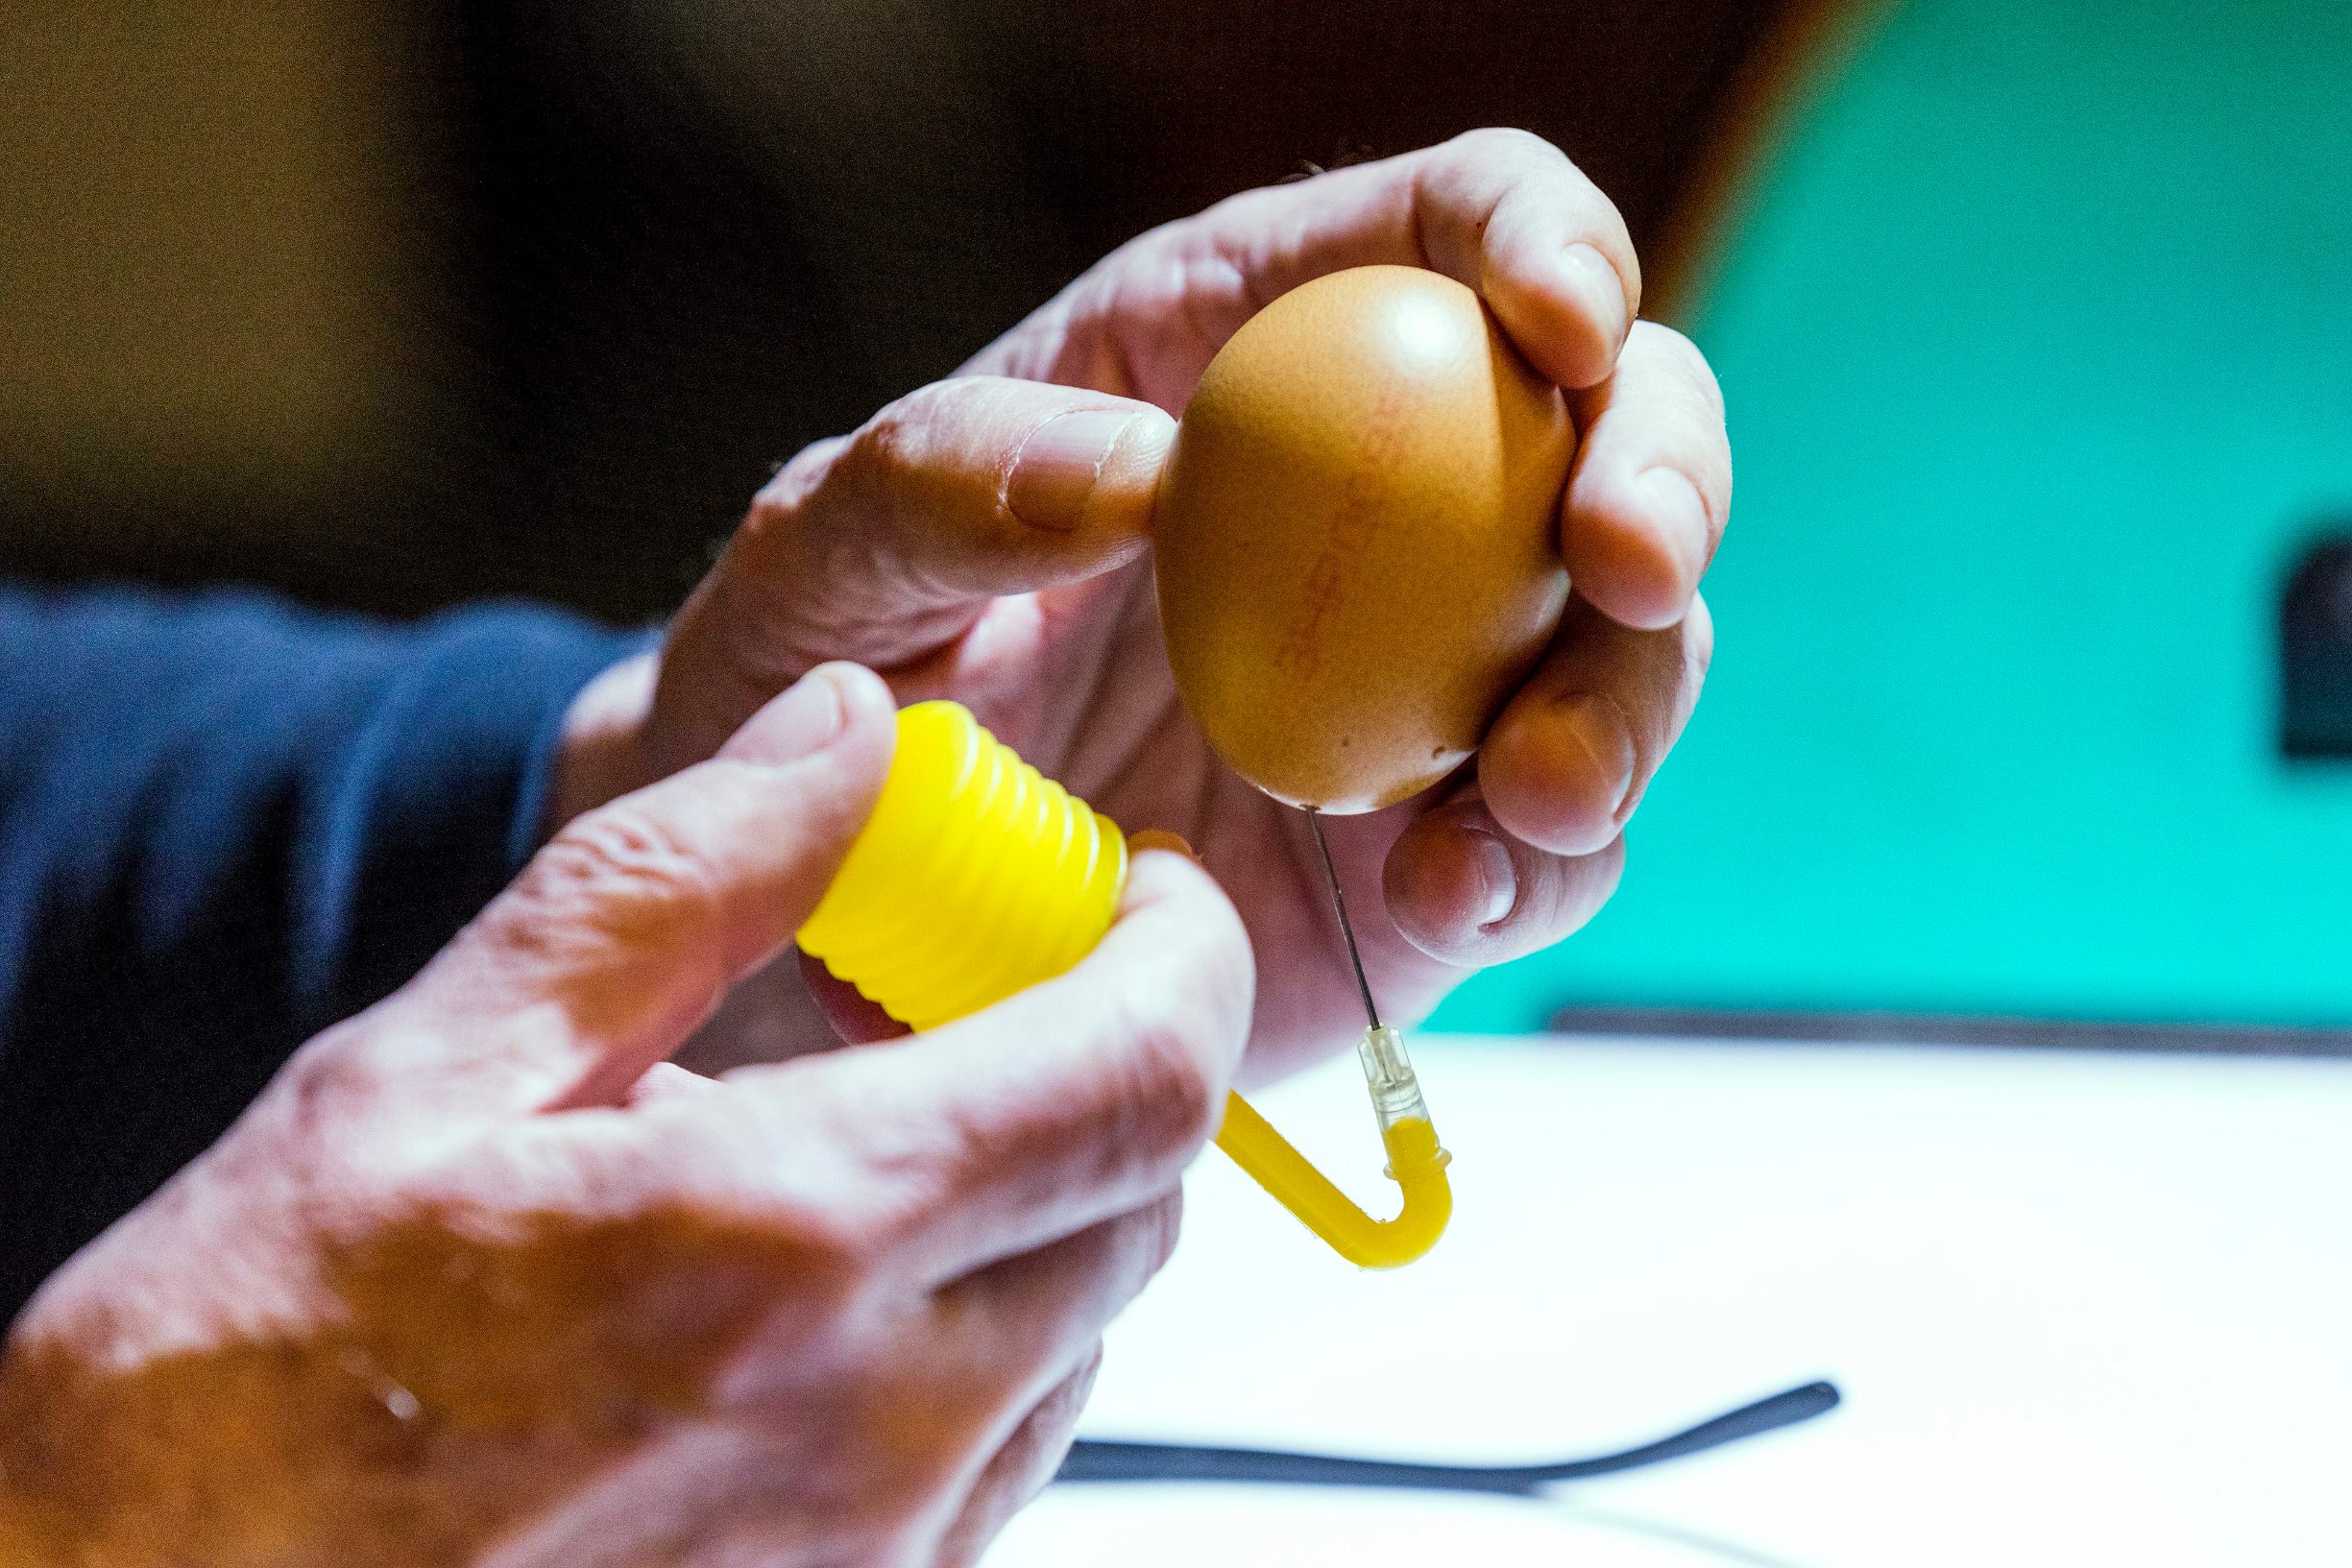 Zagreb, 070420.
Jurisiceva.
Umirovljeni animator Tomislav Sporis pokazuje kako oslikava svoja uskrsnja jaja.
Na fotografiji: prvi korak, praznjenje jaja pumpom za zrak.
Foto: Tomislav Kristo / CROPIX